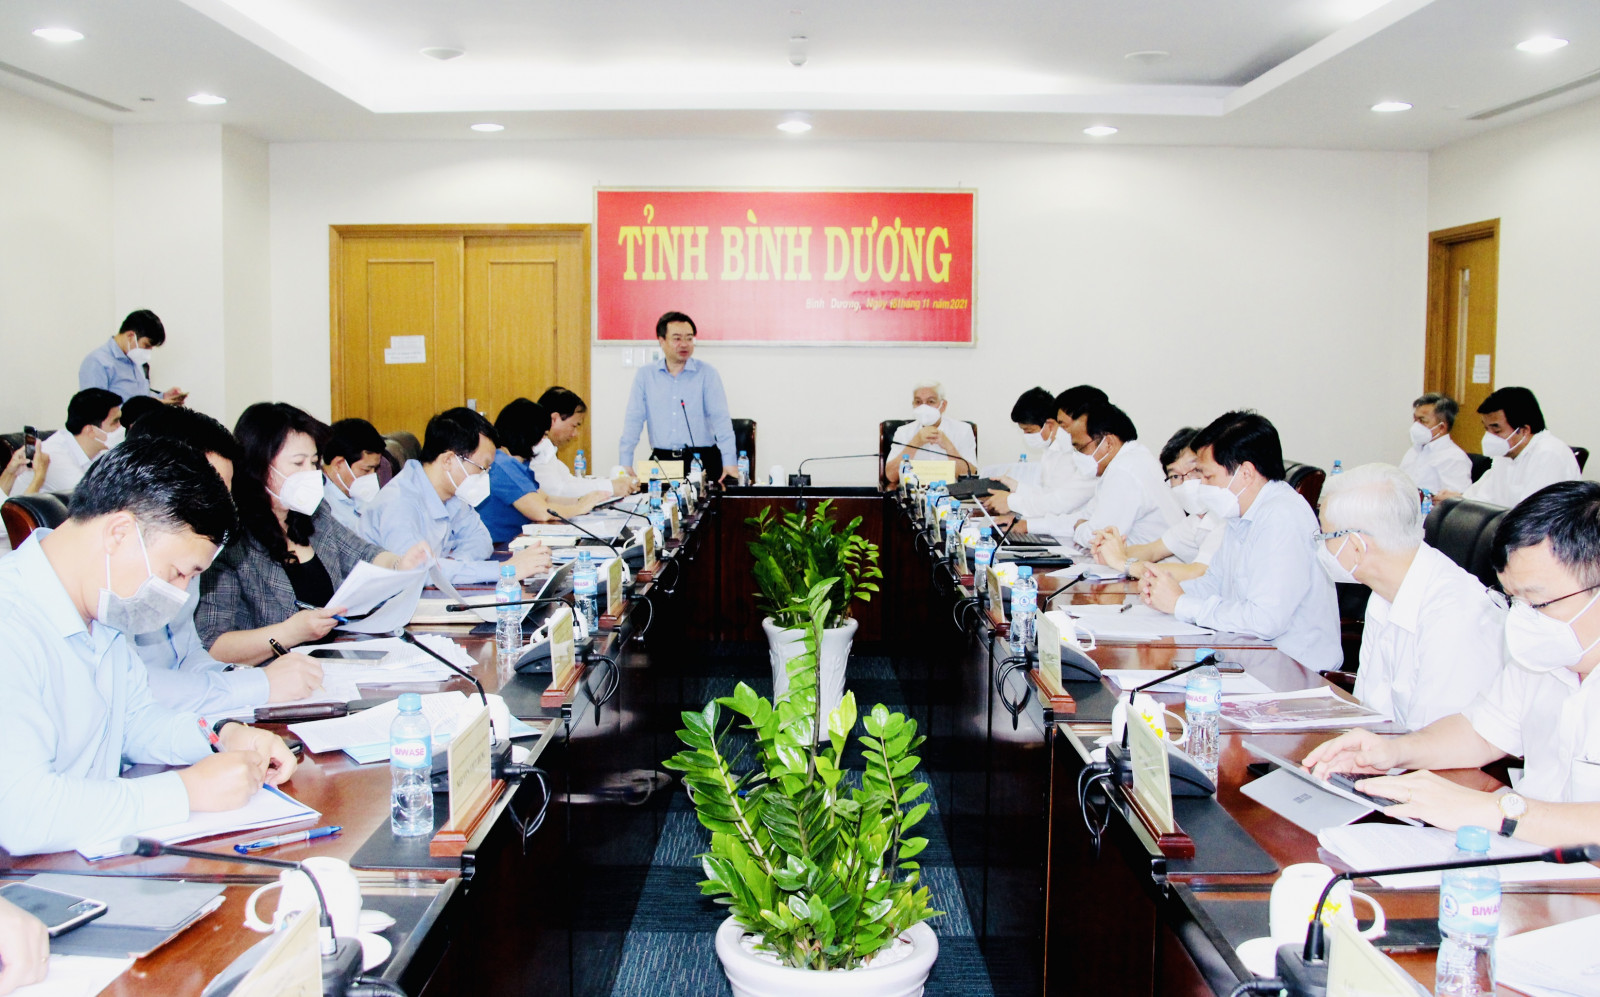 Bộ trưởng Bộ Xây dựng Nguyễn Thanh Nghị phát biểu tại buổi làm việc với lãnh đạo tỉnh và các sở ngành tỉnh Bình Dương